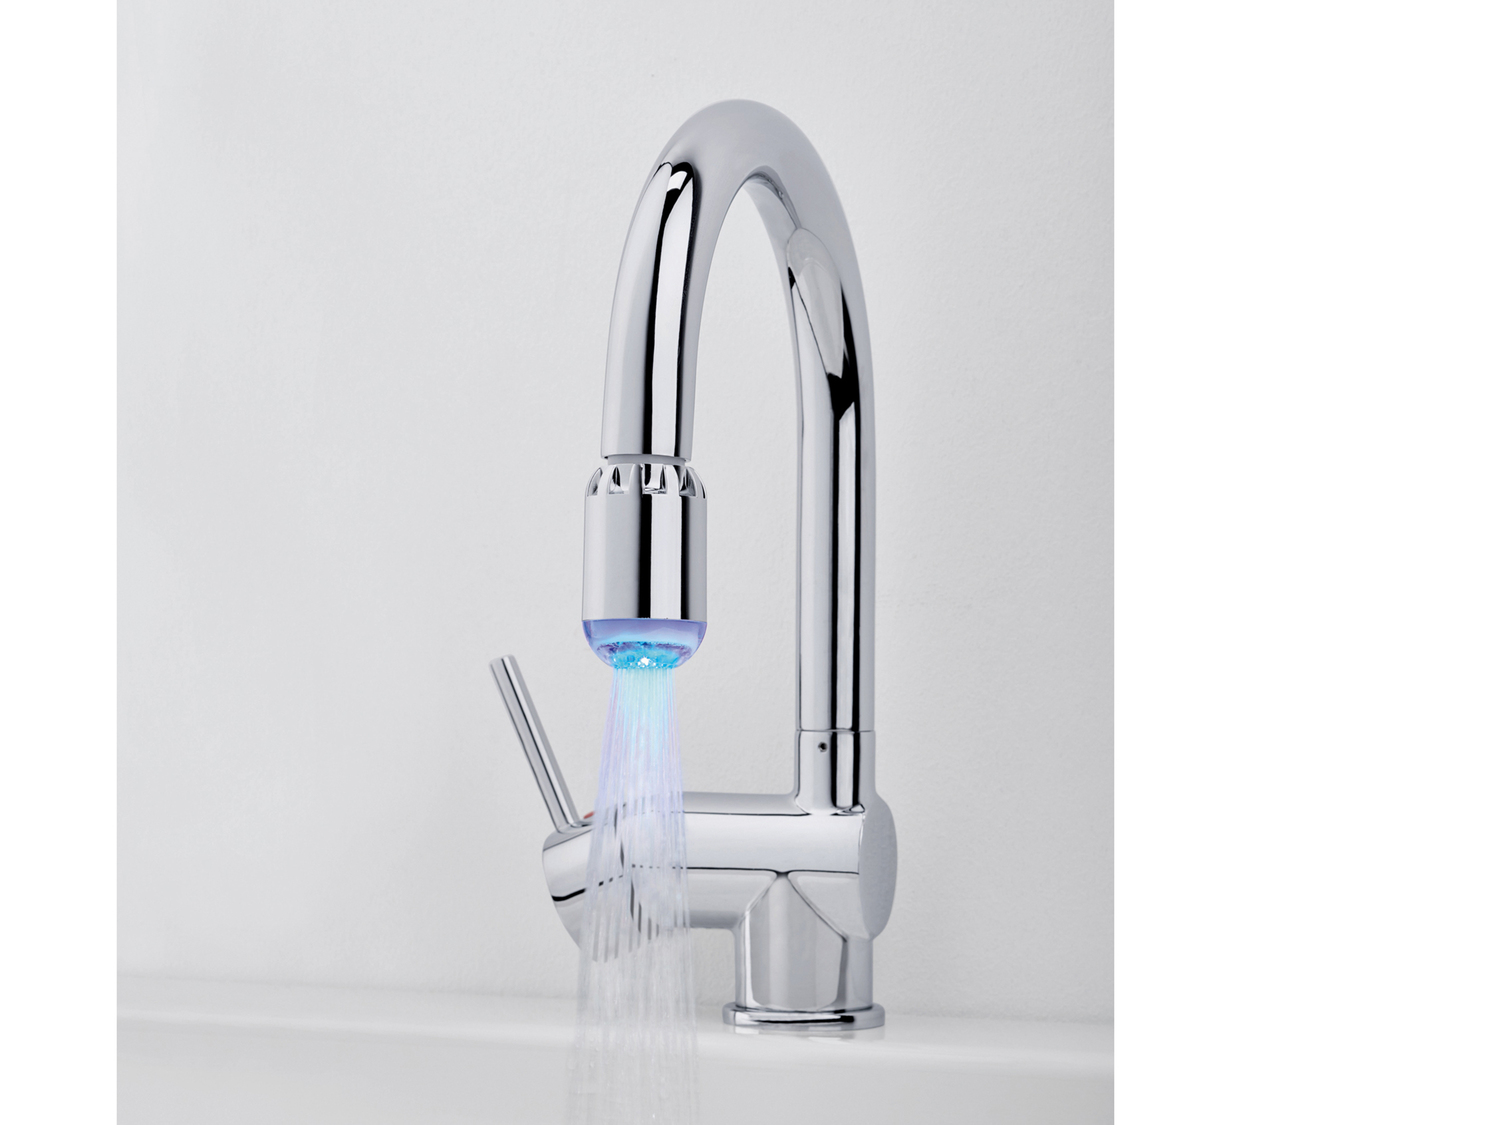 Riduttore di flusso a LED Miomare, prezzo 4.99 &#8364; 
- Per tutti i rubinetti ...